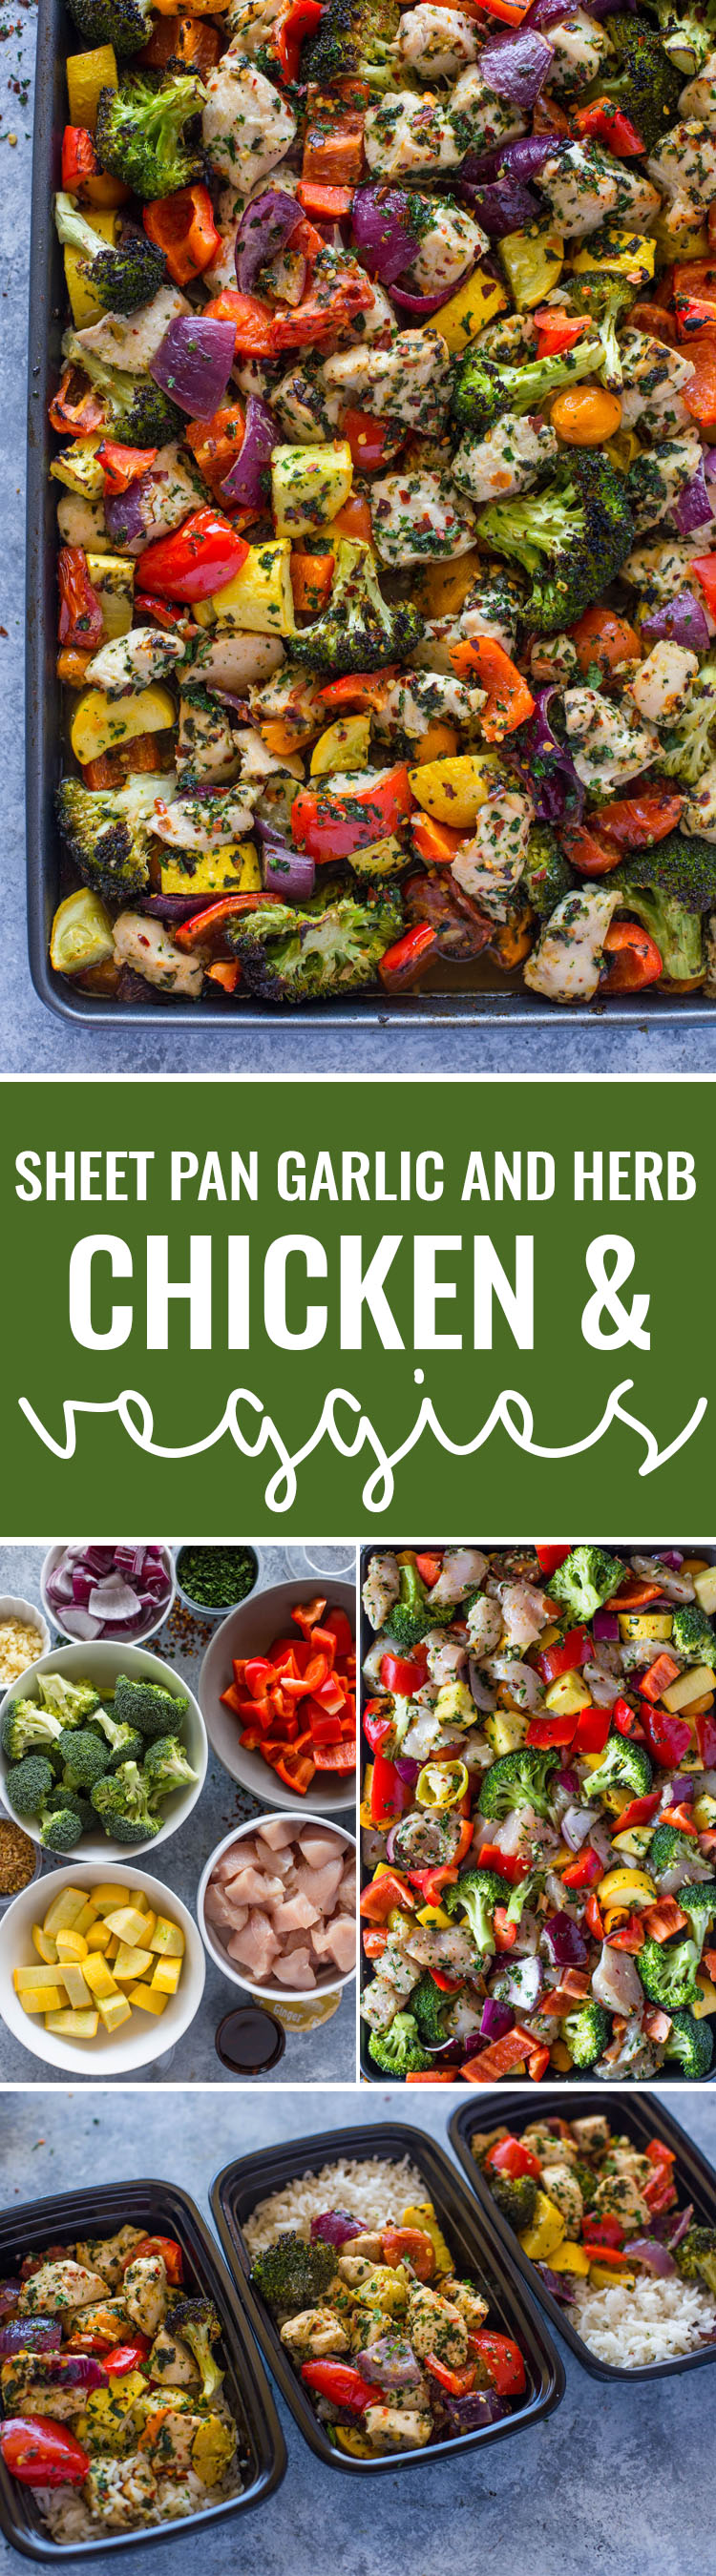 Sheet Pan Roasted Garlic & Herb Chicken and Veggies